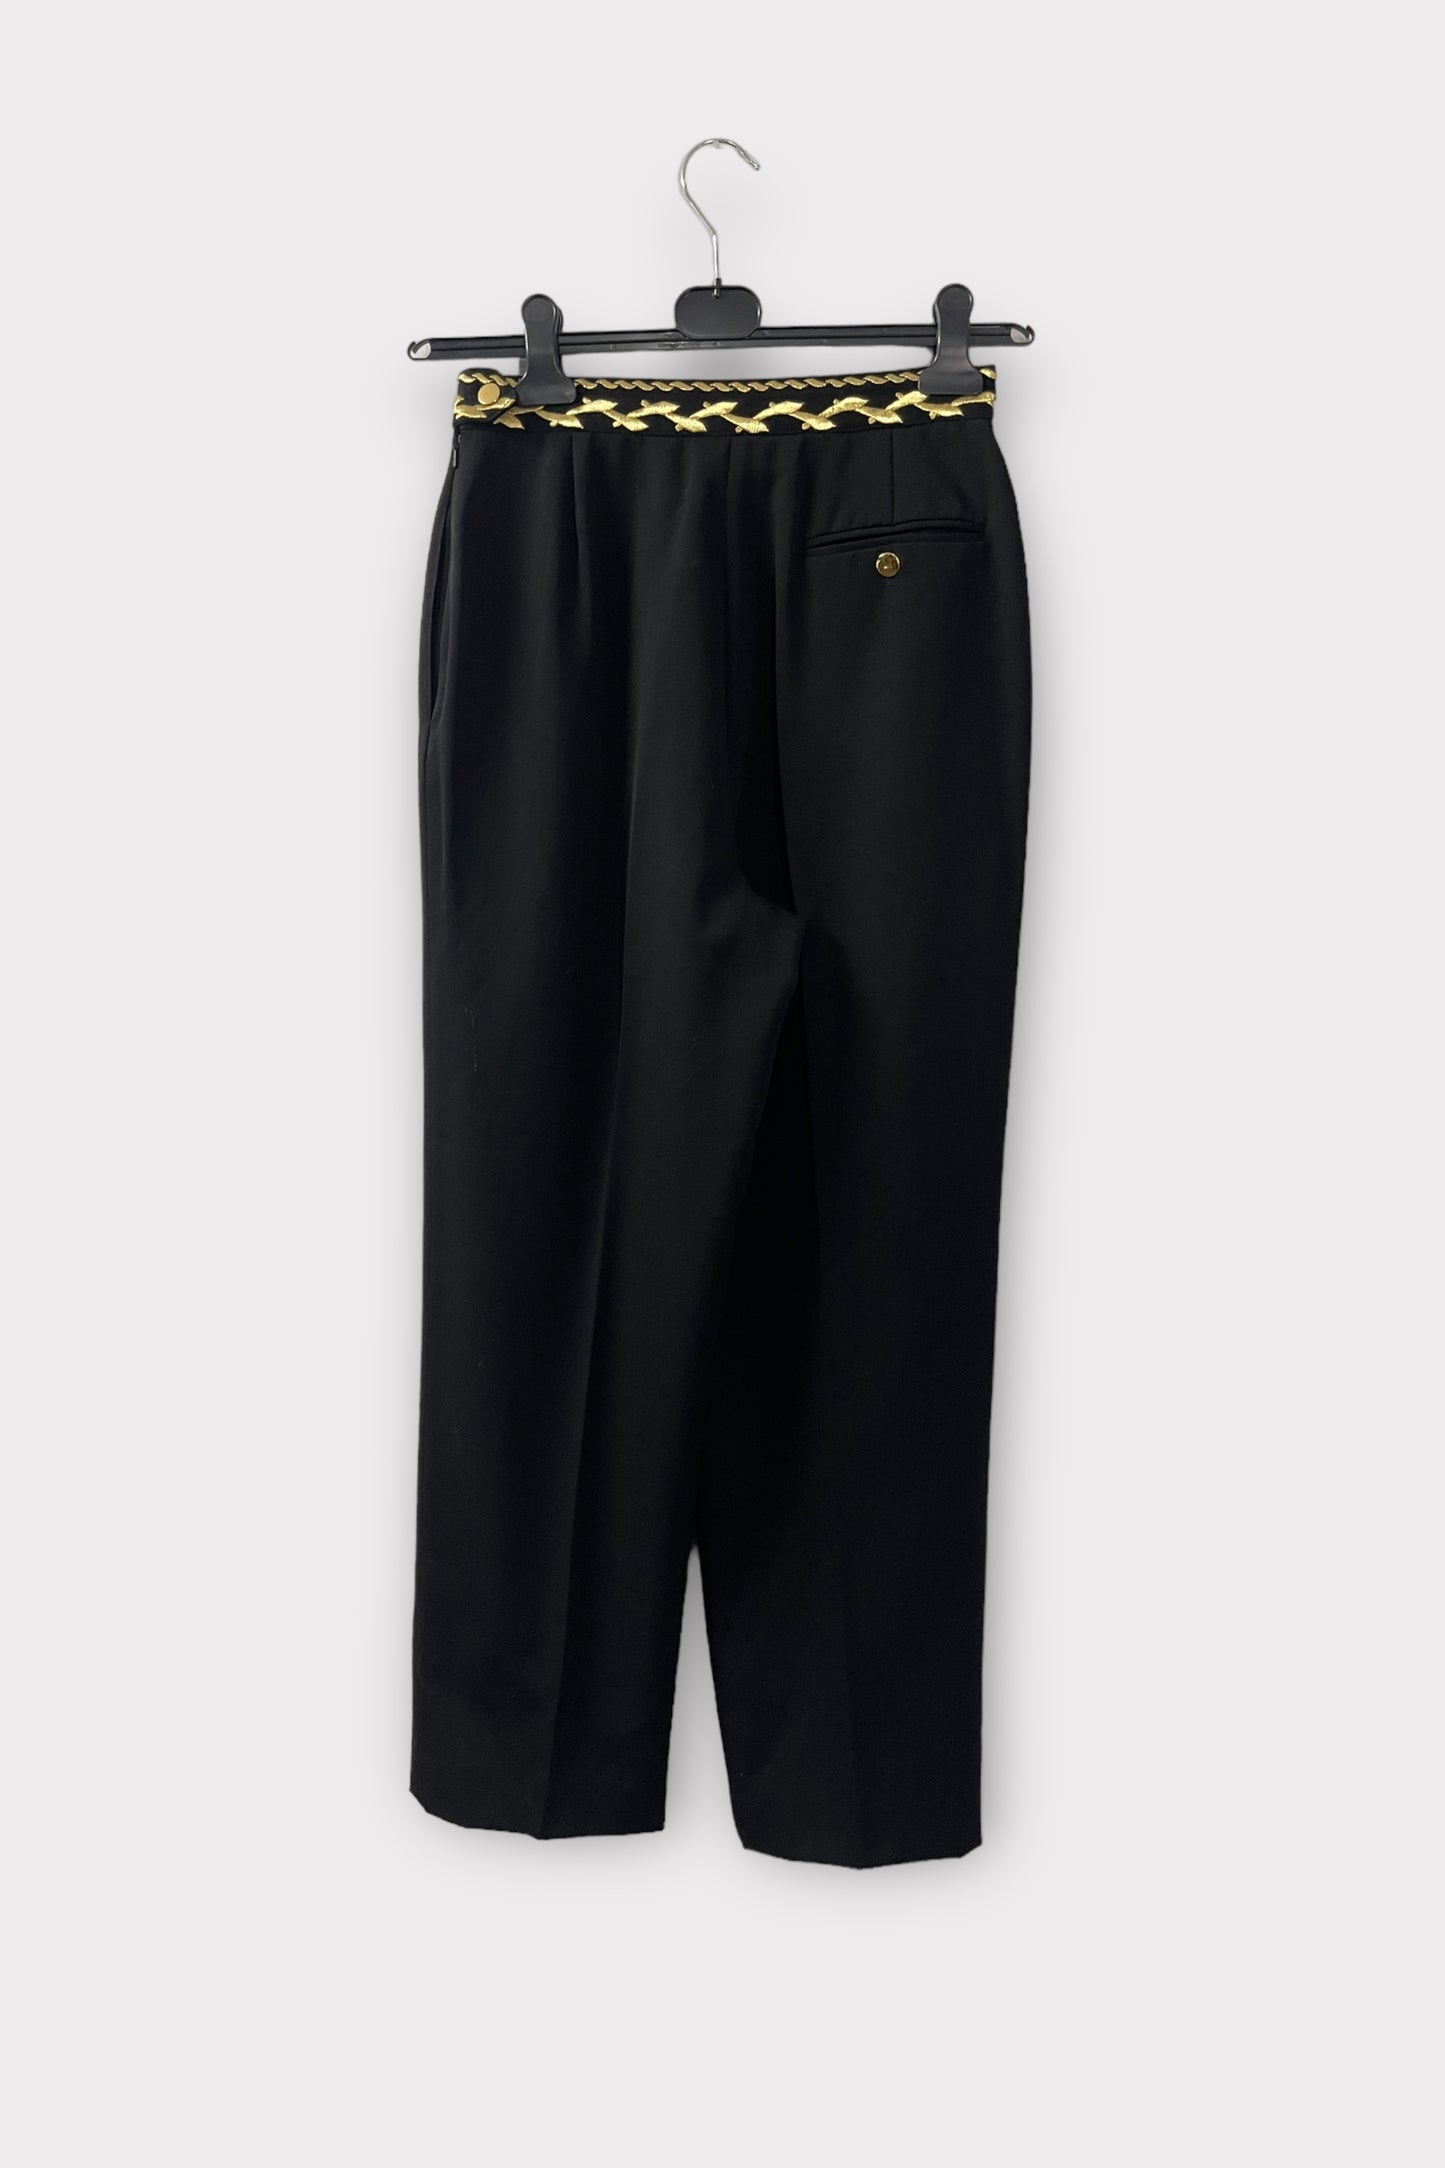 kes black & gold pantalon - S/M